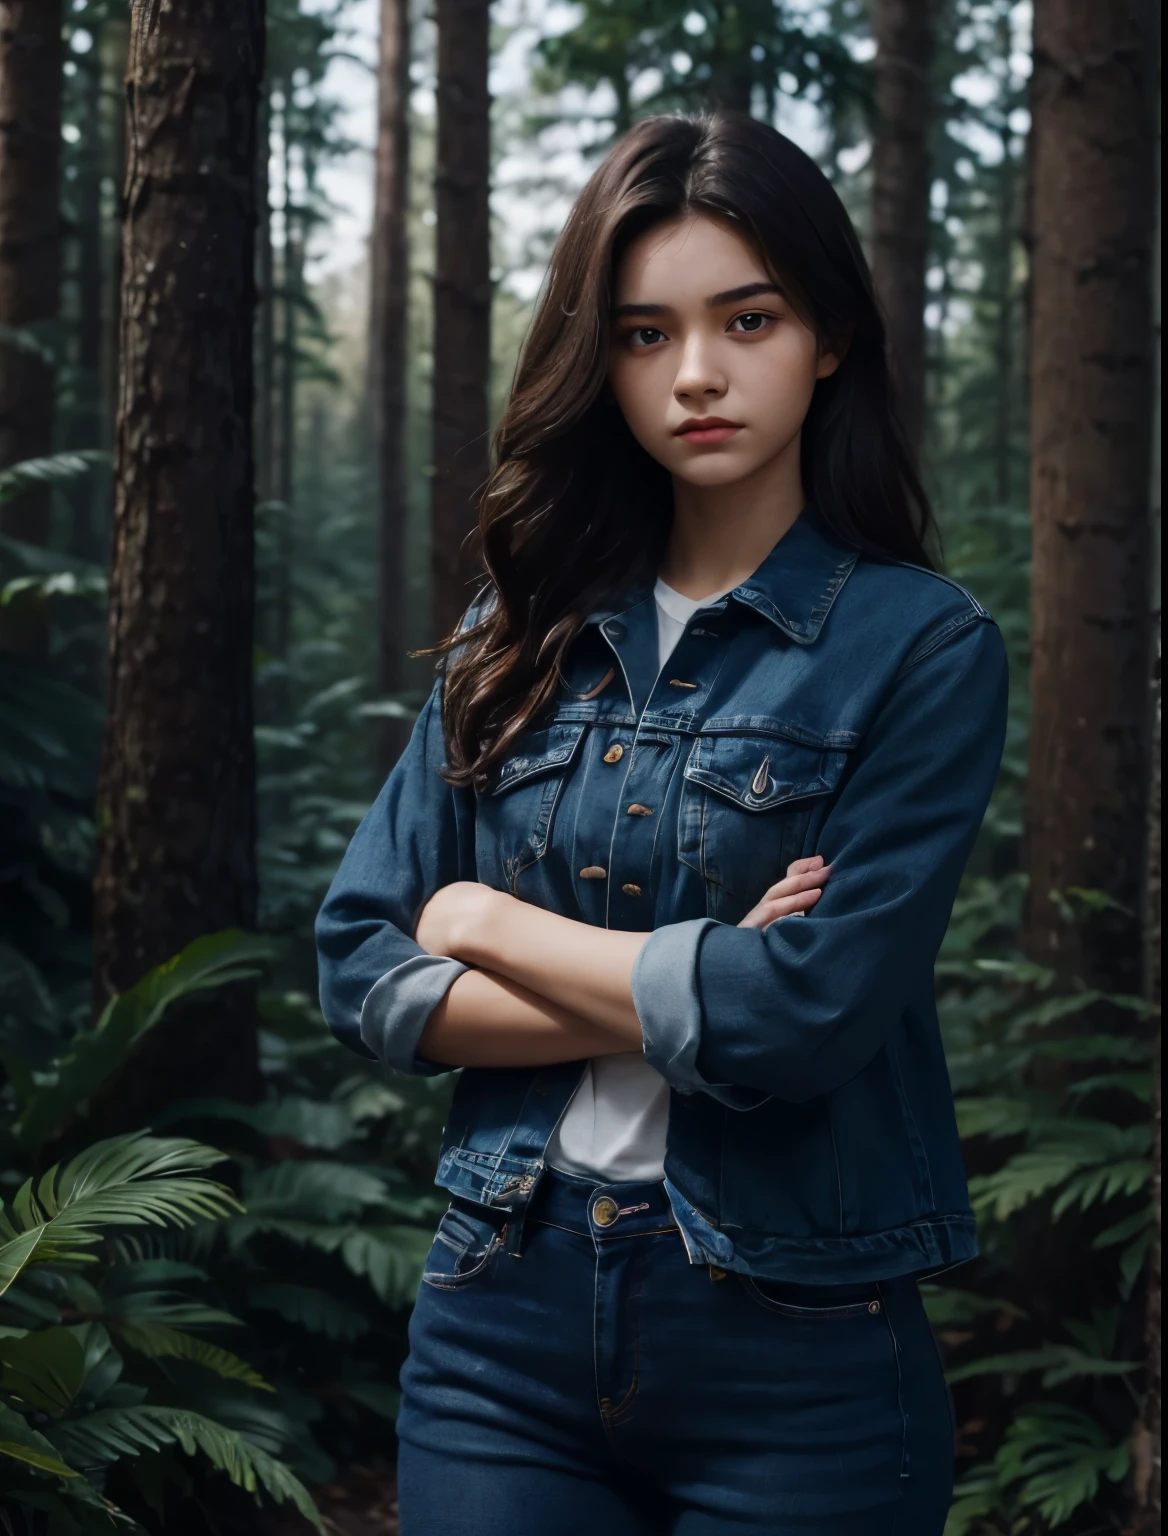 一个美丽的女人. 十五岁. 她双手交叉，脸上带着挑衅的表情. 她穿着蓝色牛仔裤. 深棕色头发. 她在森林里.